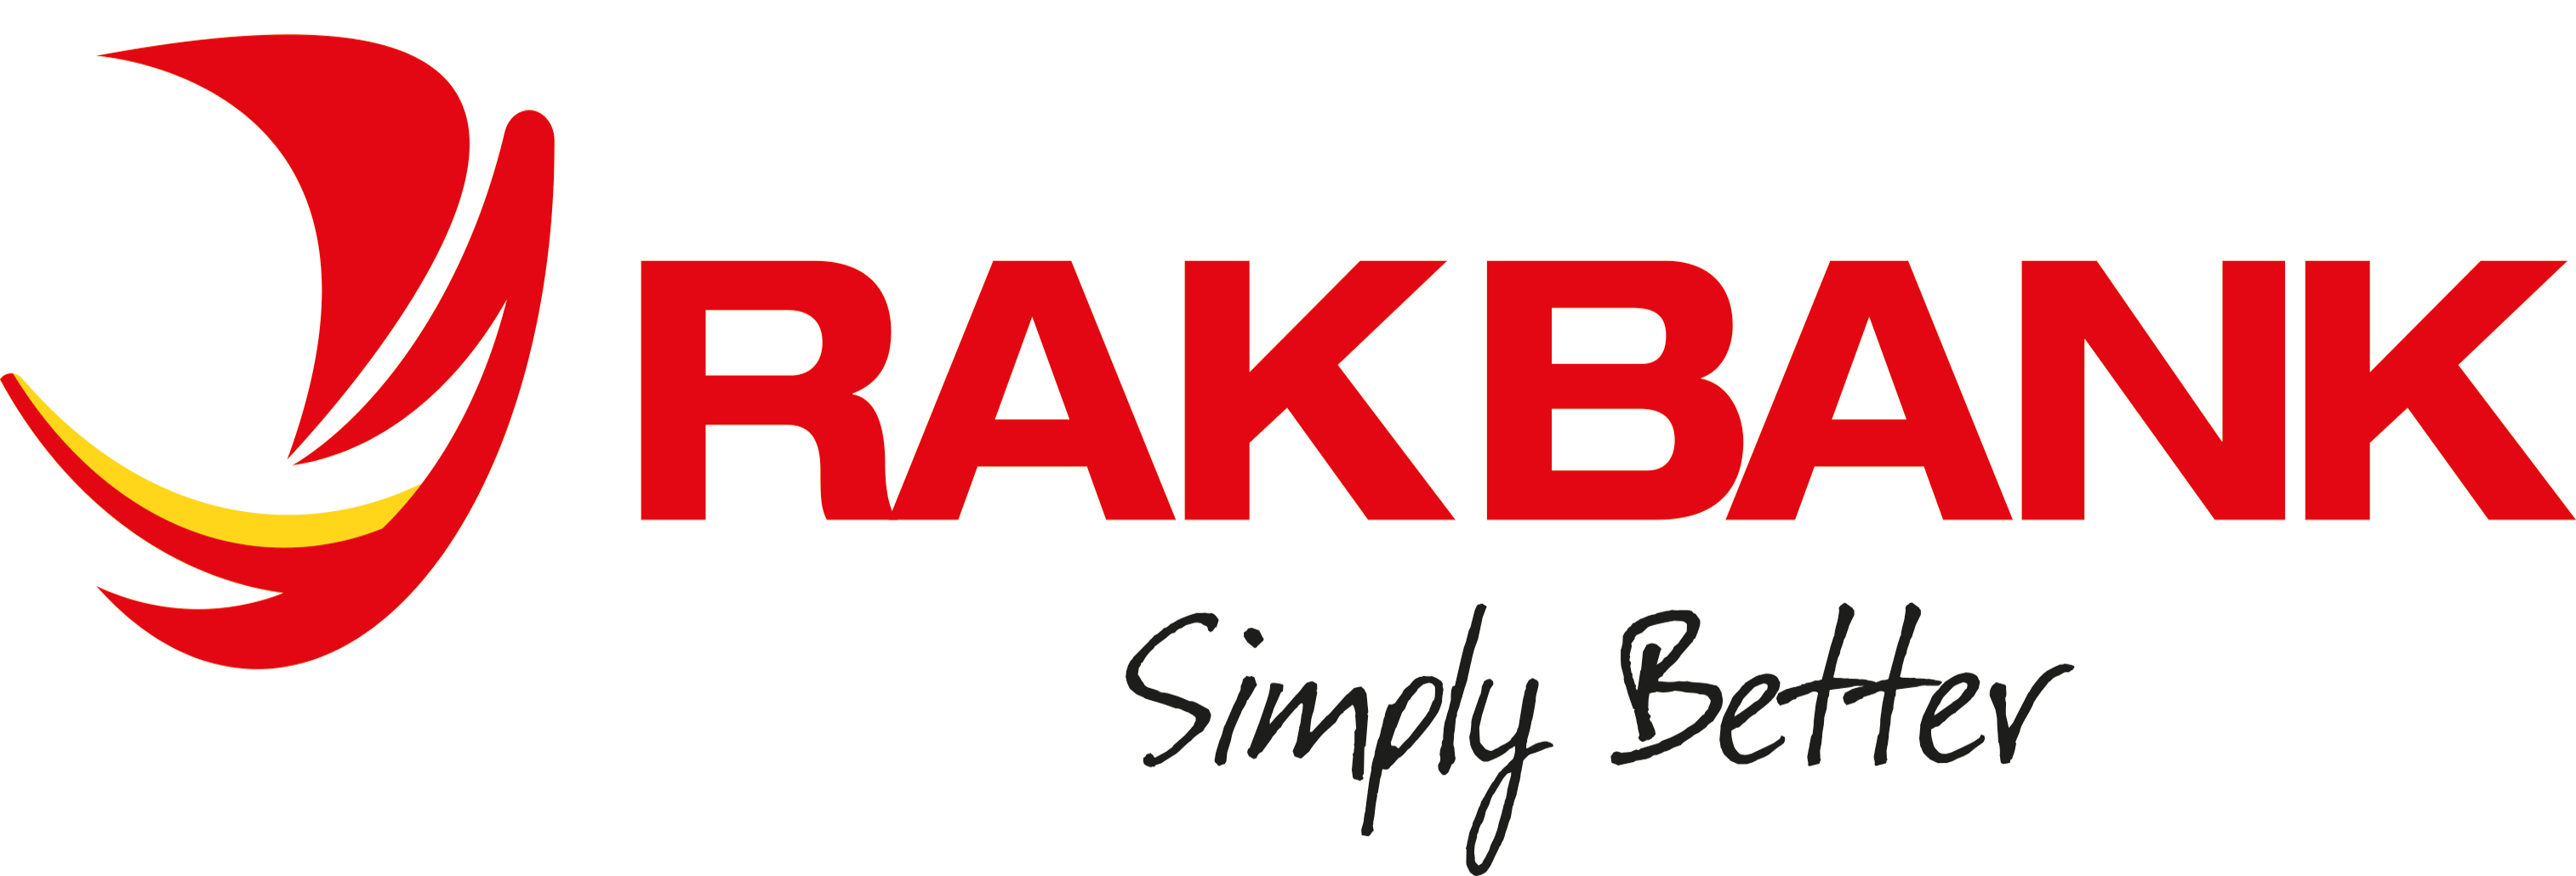 RAKBANK_logo_.png